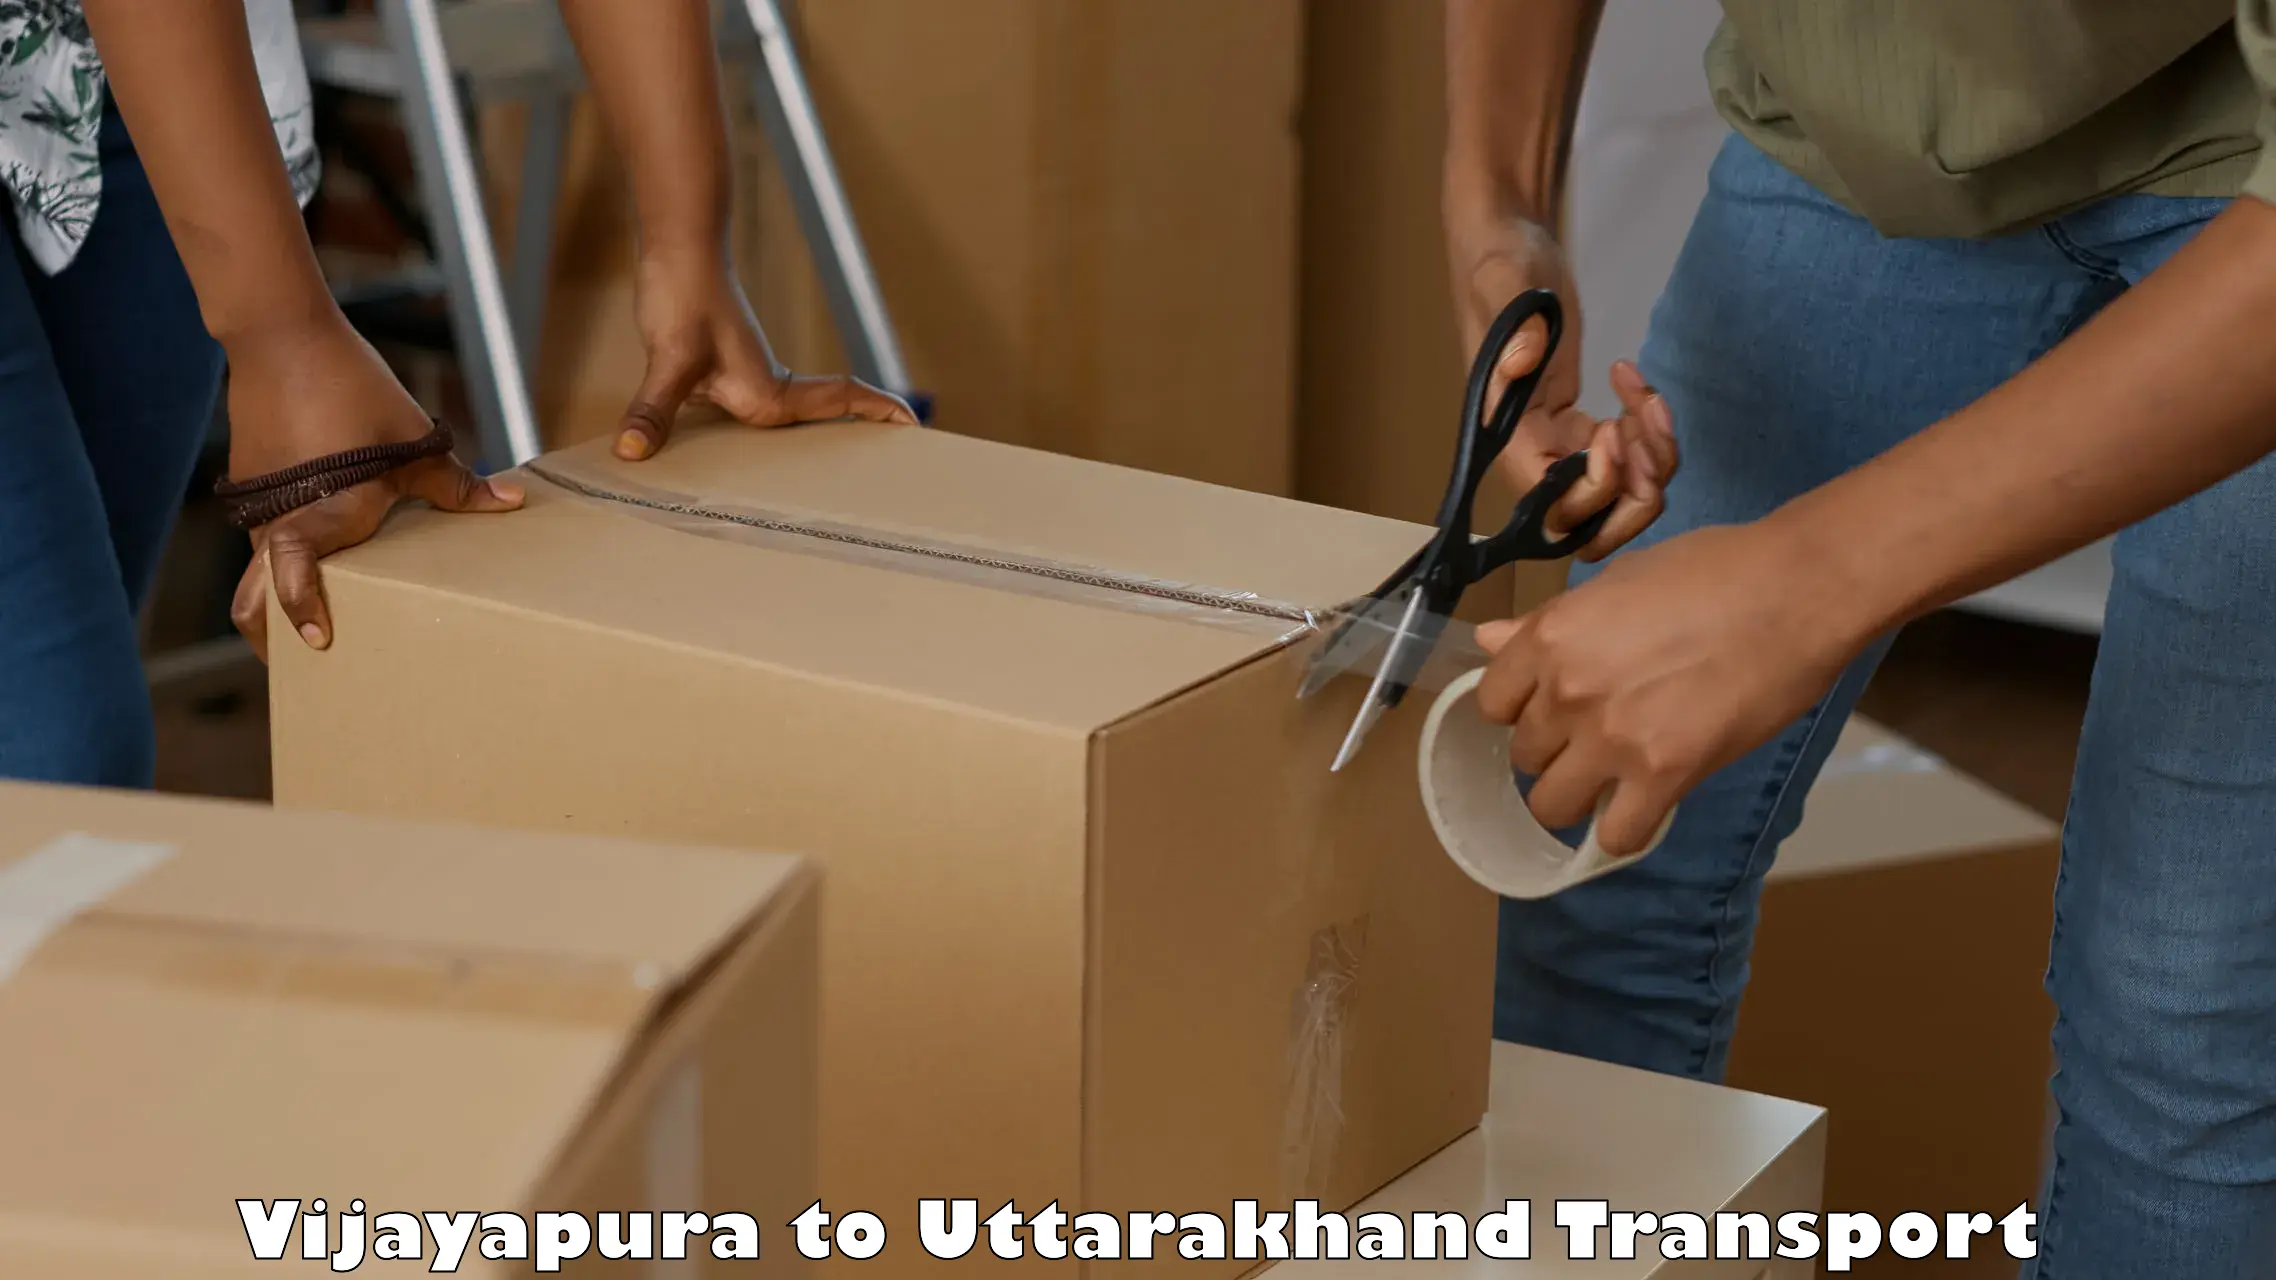 Commercial transport service Vijayapura to IIT Roorkee